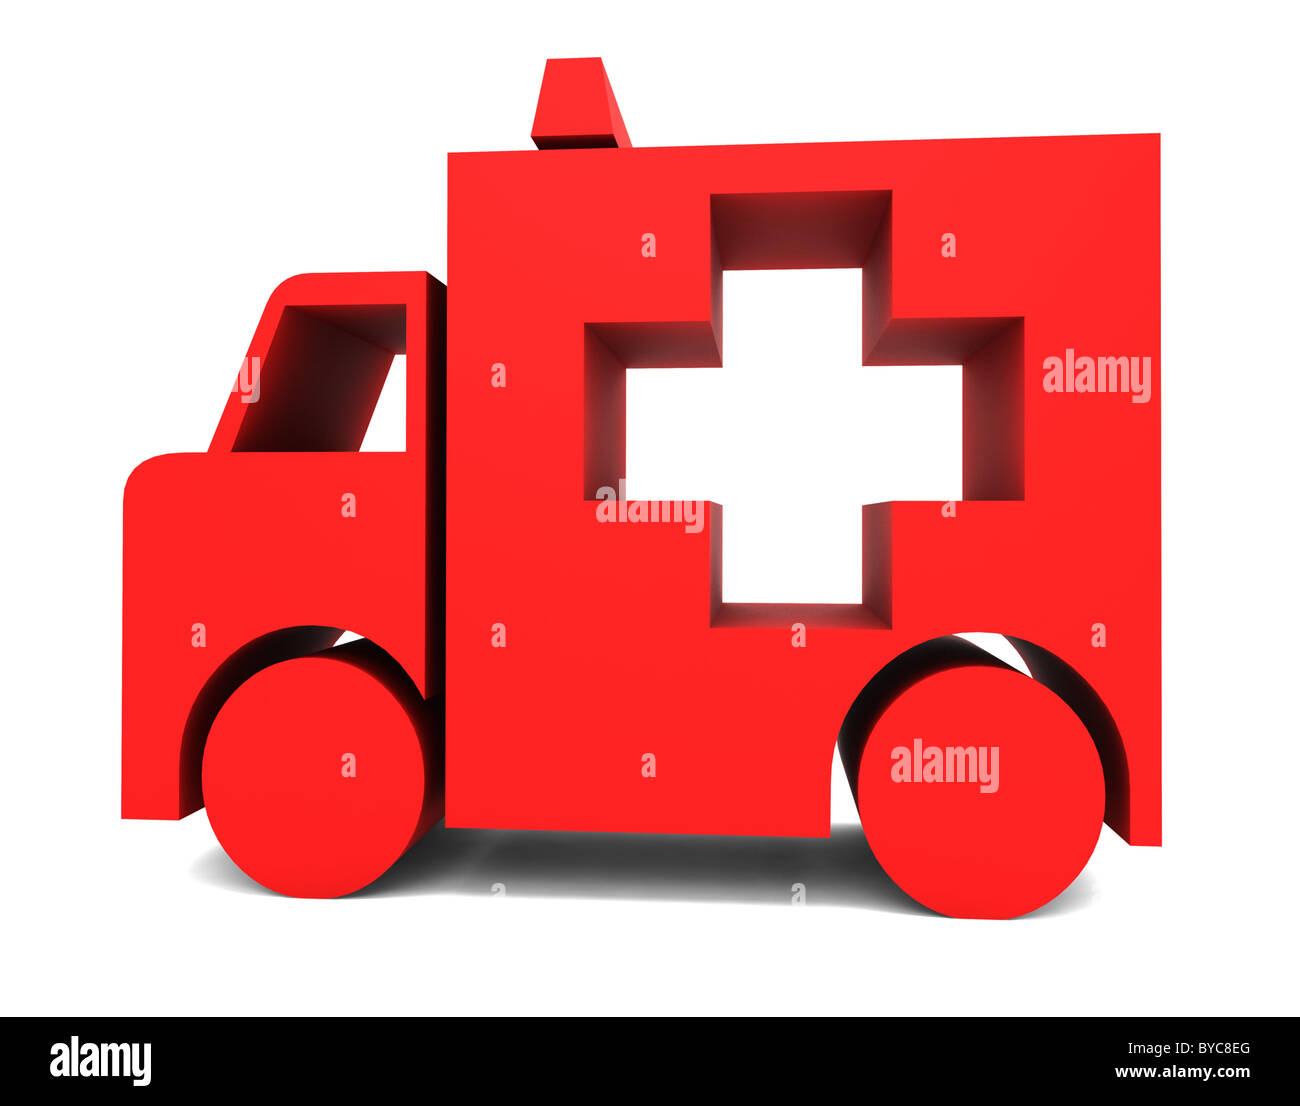 red ambulance vehicle illustration Stock Photo